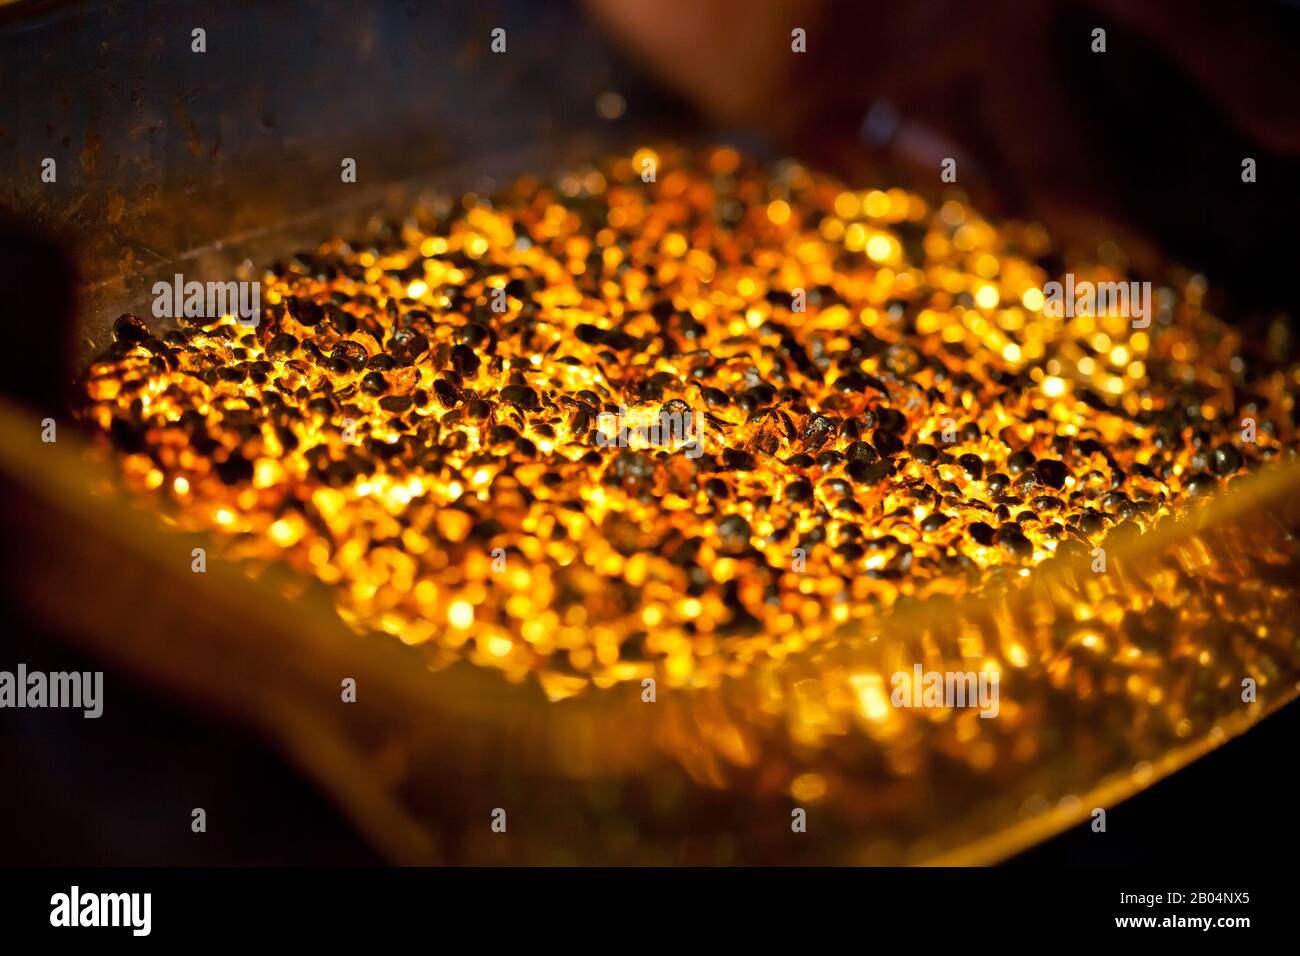 Nahaufnahme von vielen Ingots schmelzendem Gold, heiß glänzenden Metallteilen, die leuchten, niemand Stockfoto